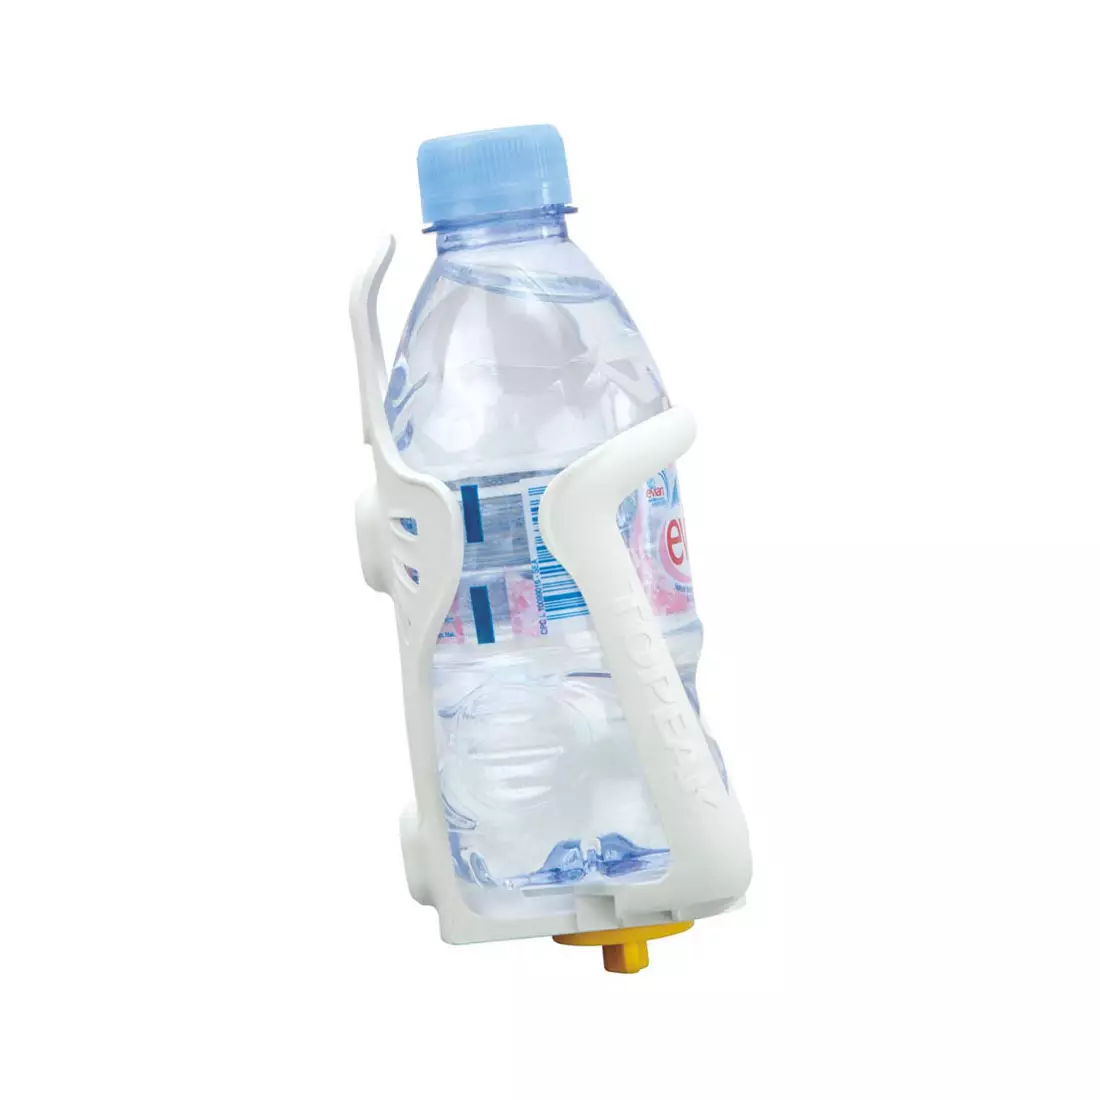 TOPEAK verstellbarer Flaschenhalter MODULA CAGE EX white